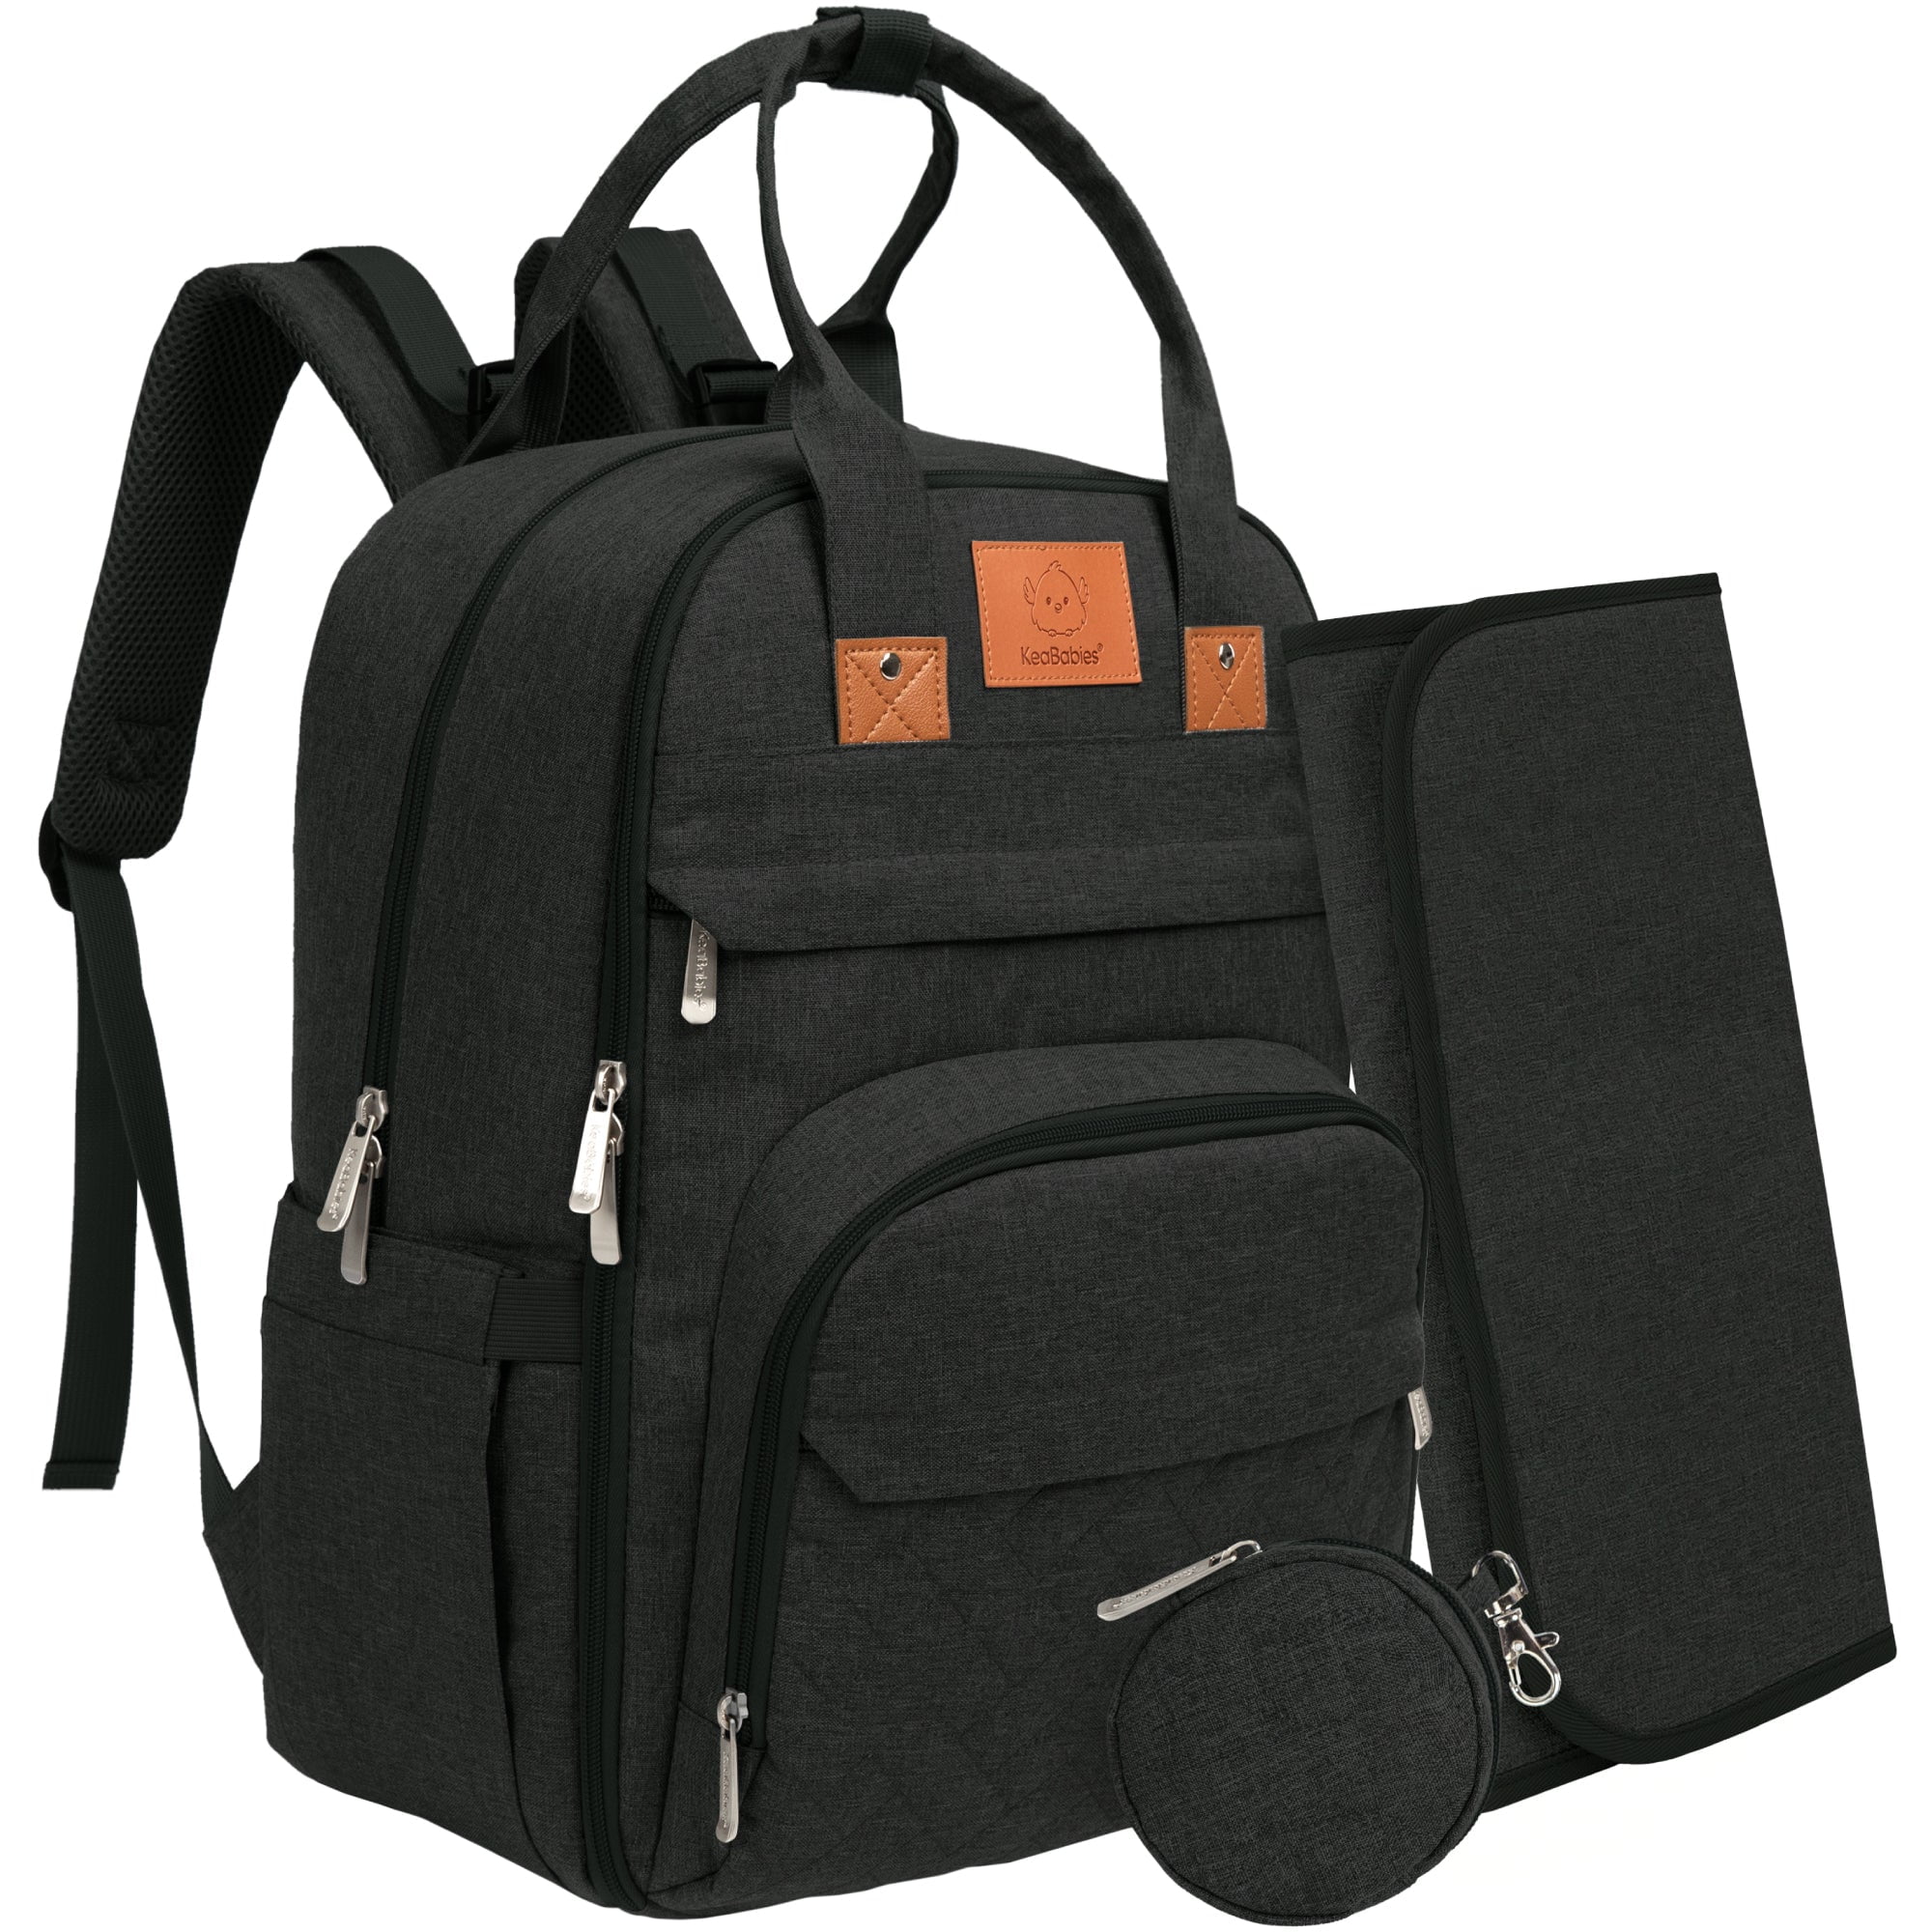 KeaBabies Explorer Diaper Bag/Backpack - Classic Gray